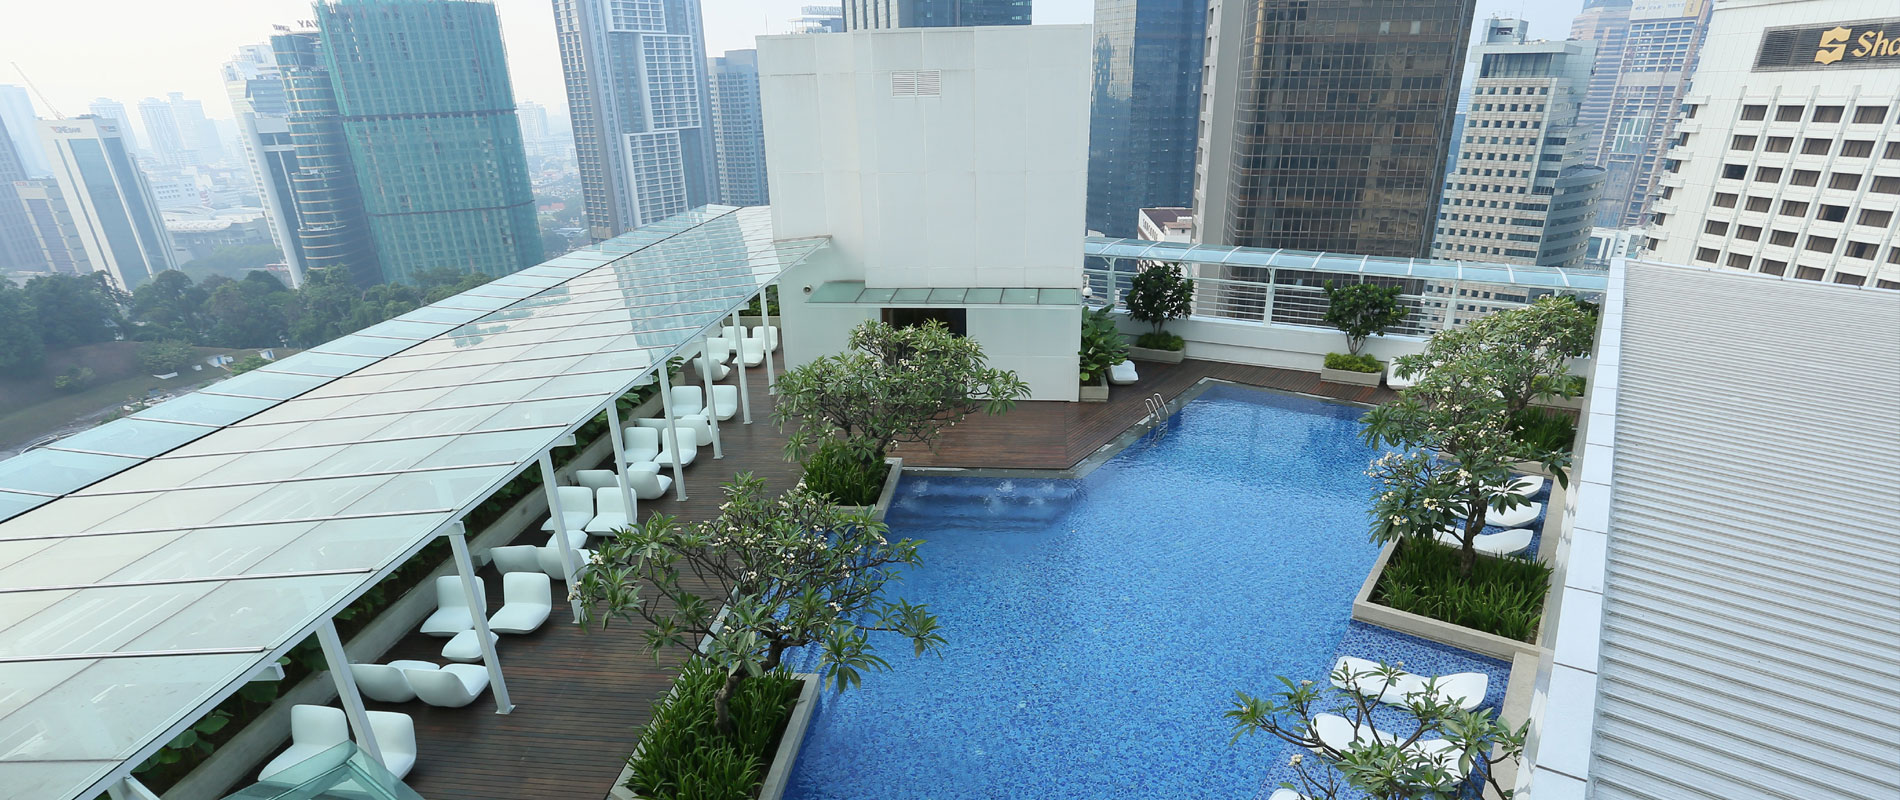 Oasia Suites Kuala Lumpur (Kuala Lumpur): Alle Infos zum Hotel